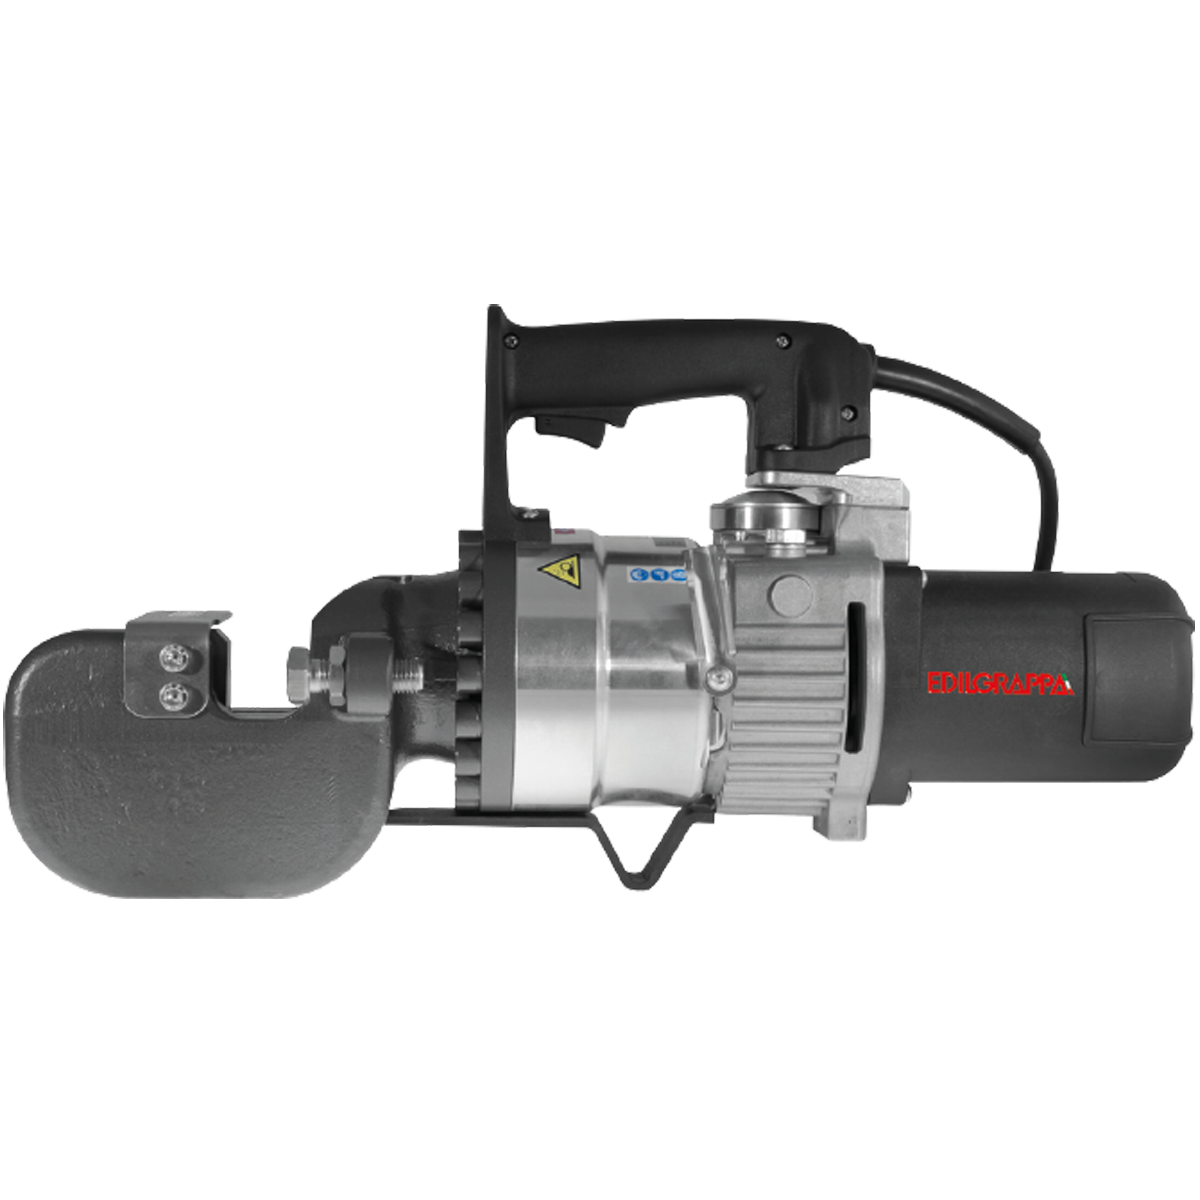 EDILGRAPPA T28N Hidraulikus Vágógép 28mm vágási kapacitással